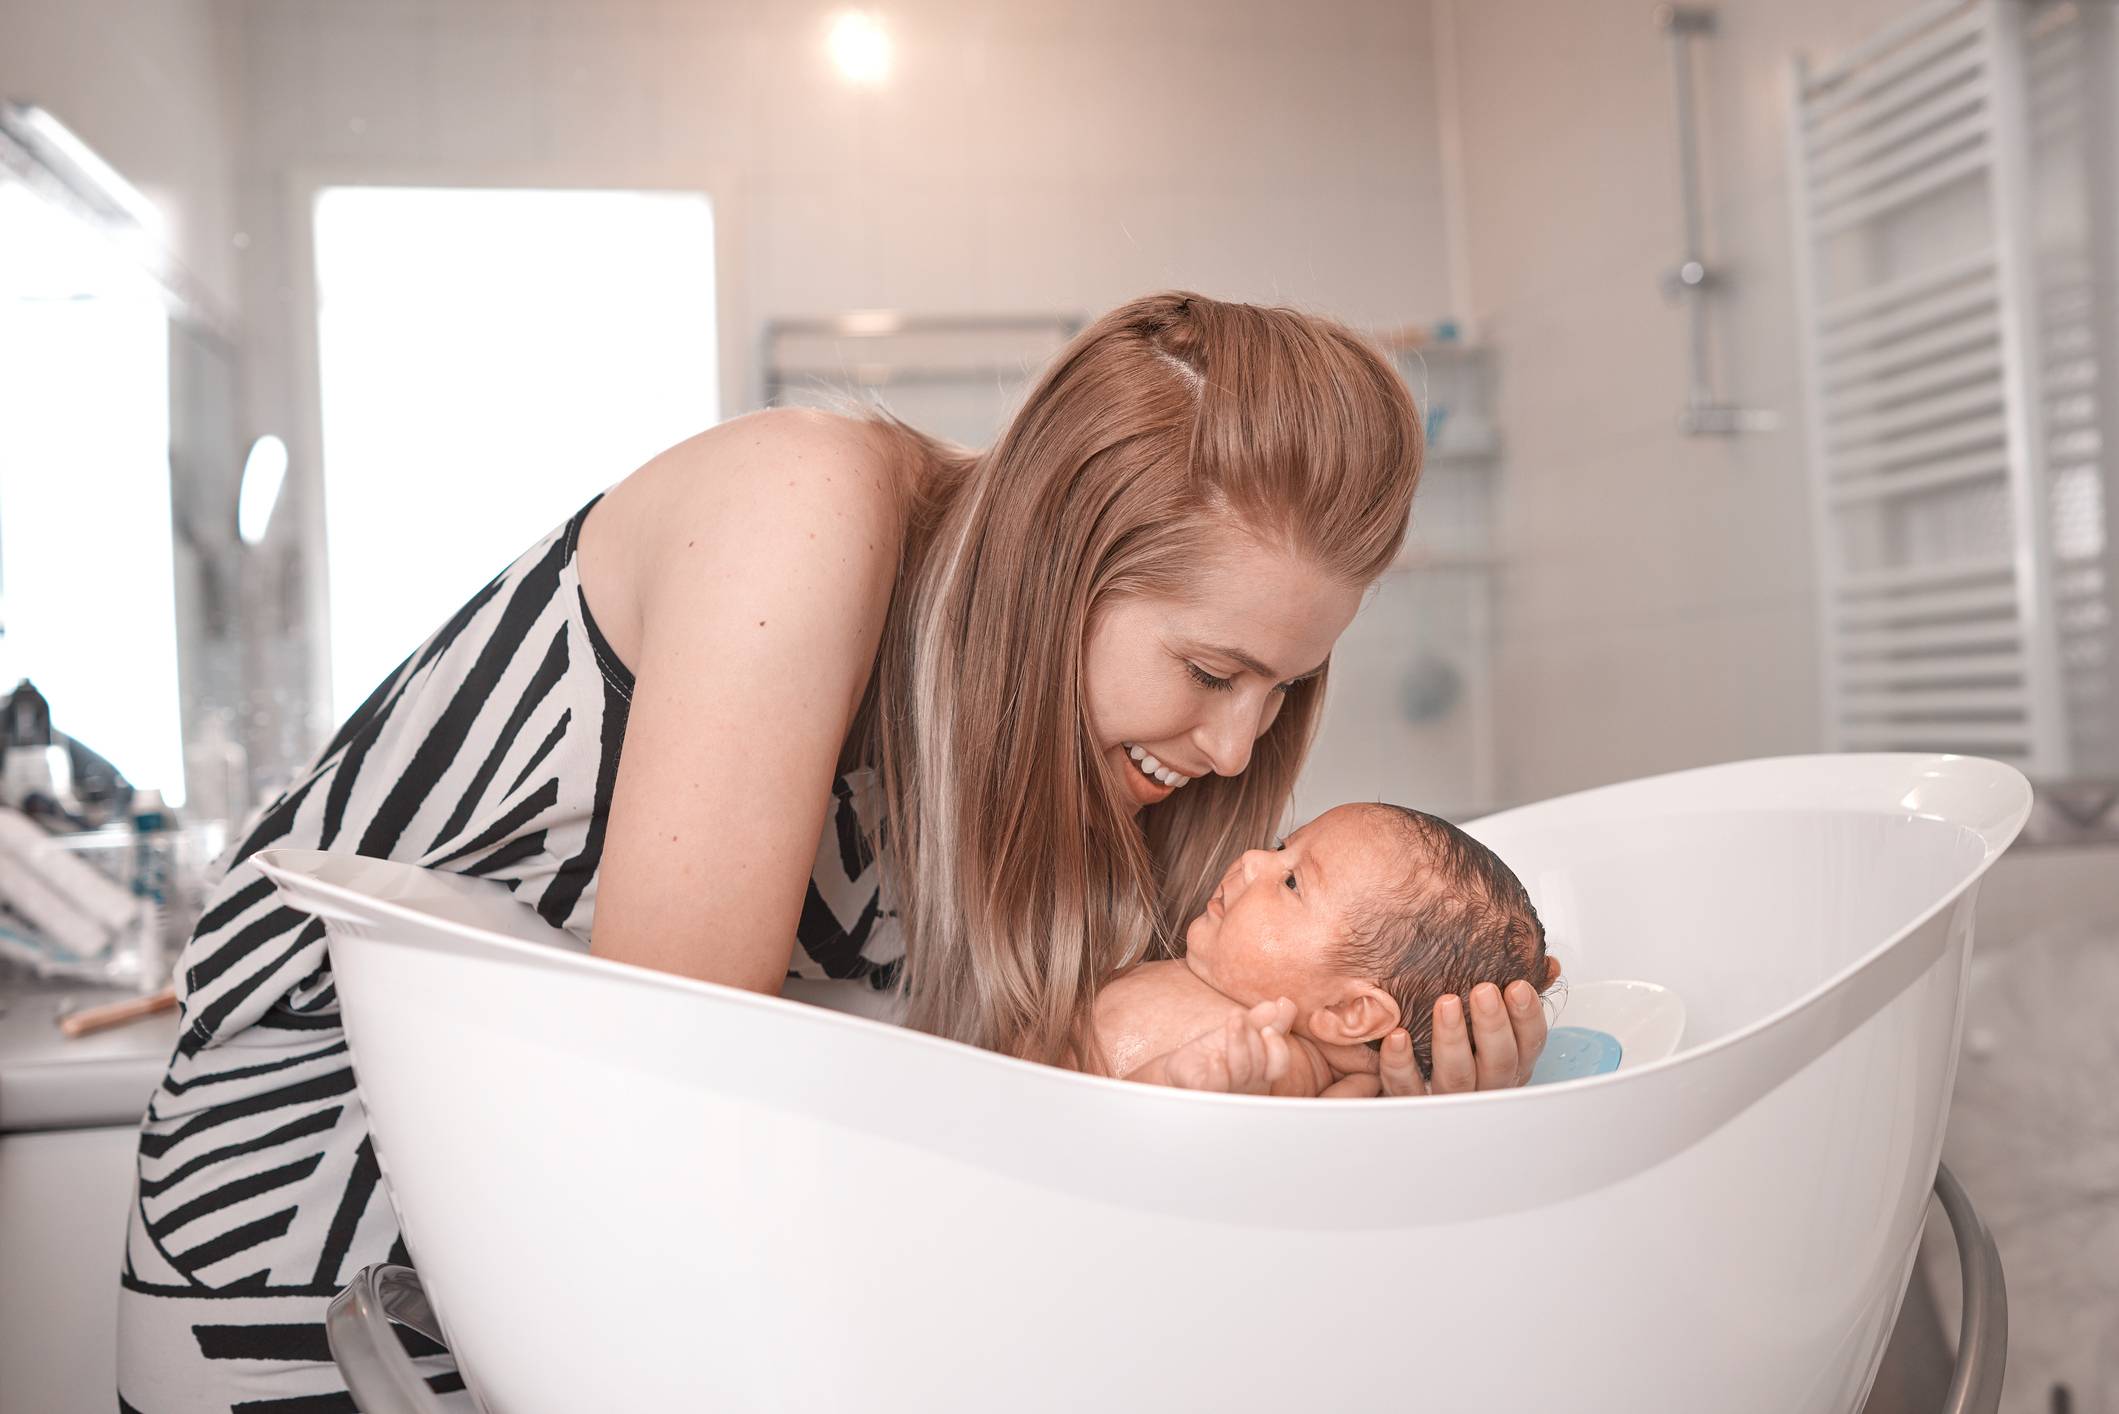 Первое купание новорожденного дома - правила для родителей